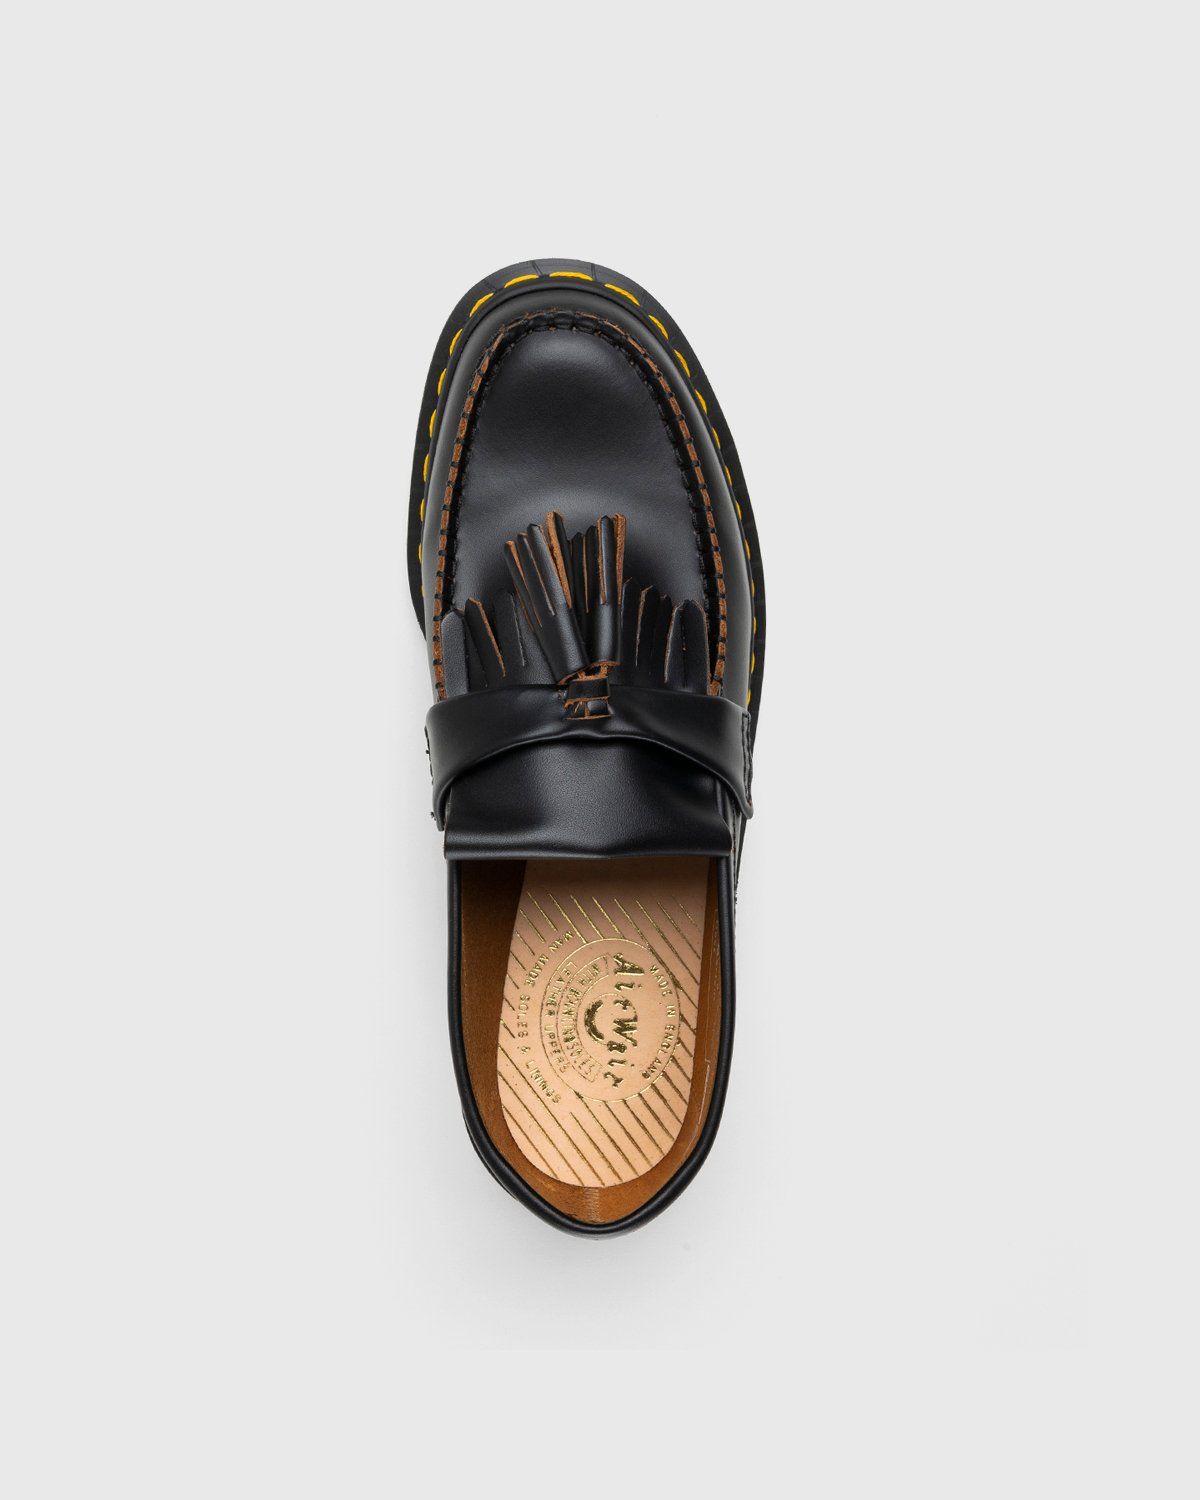 Dr. Martens – Adrian Black Quilon - Shoes - Black - Image 5